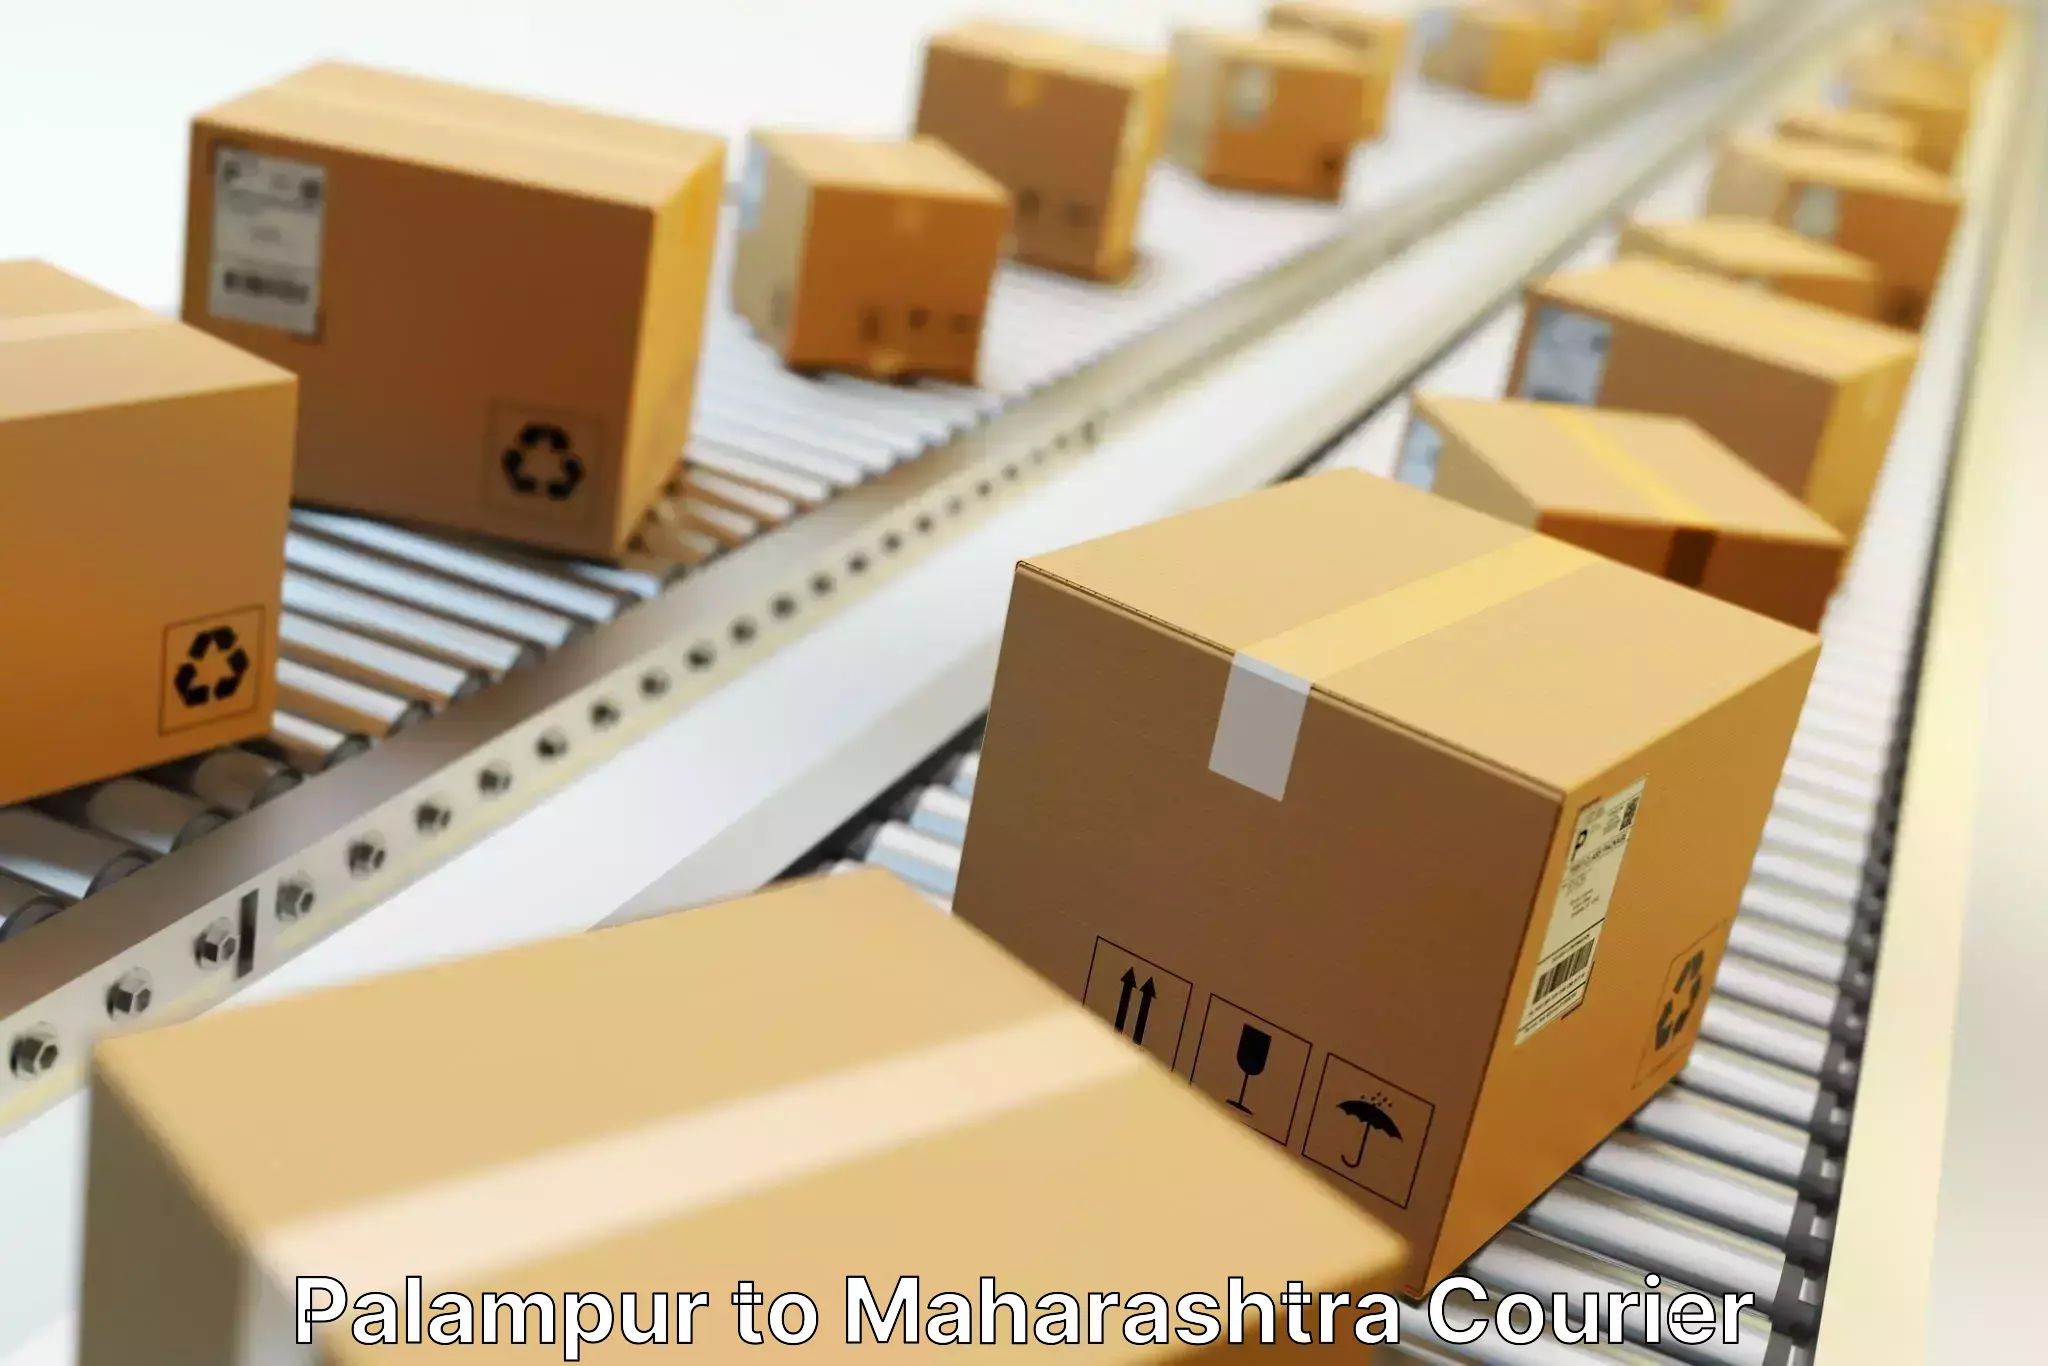 Ground shipping Palampur to Maharashtra